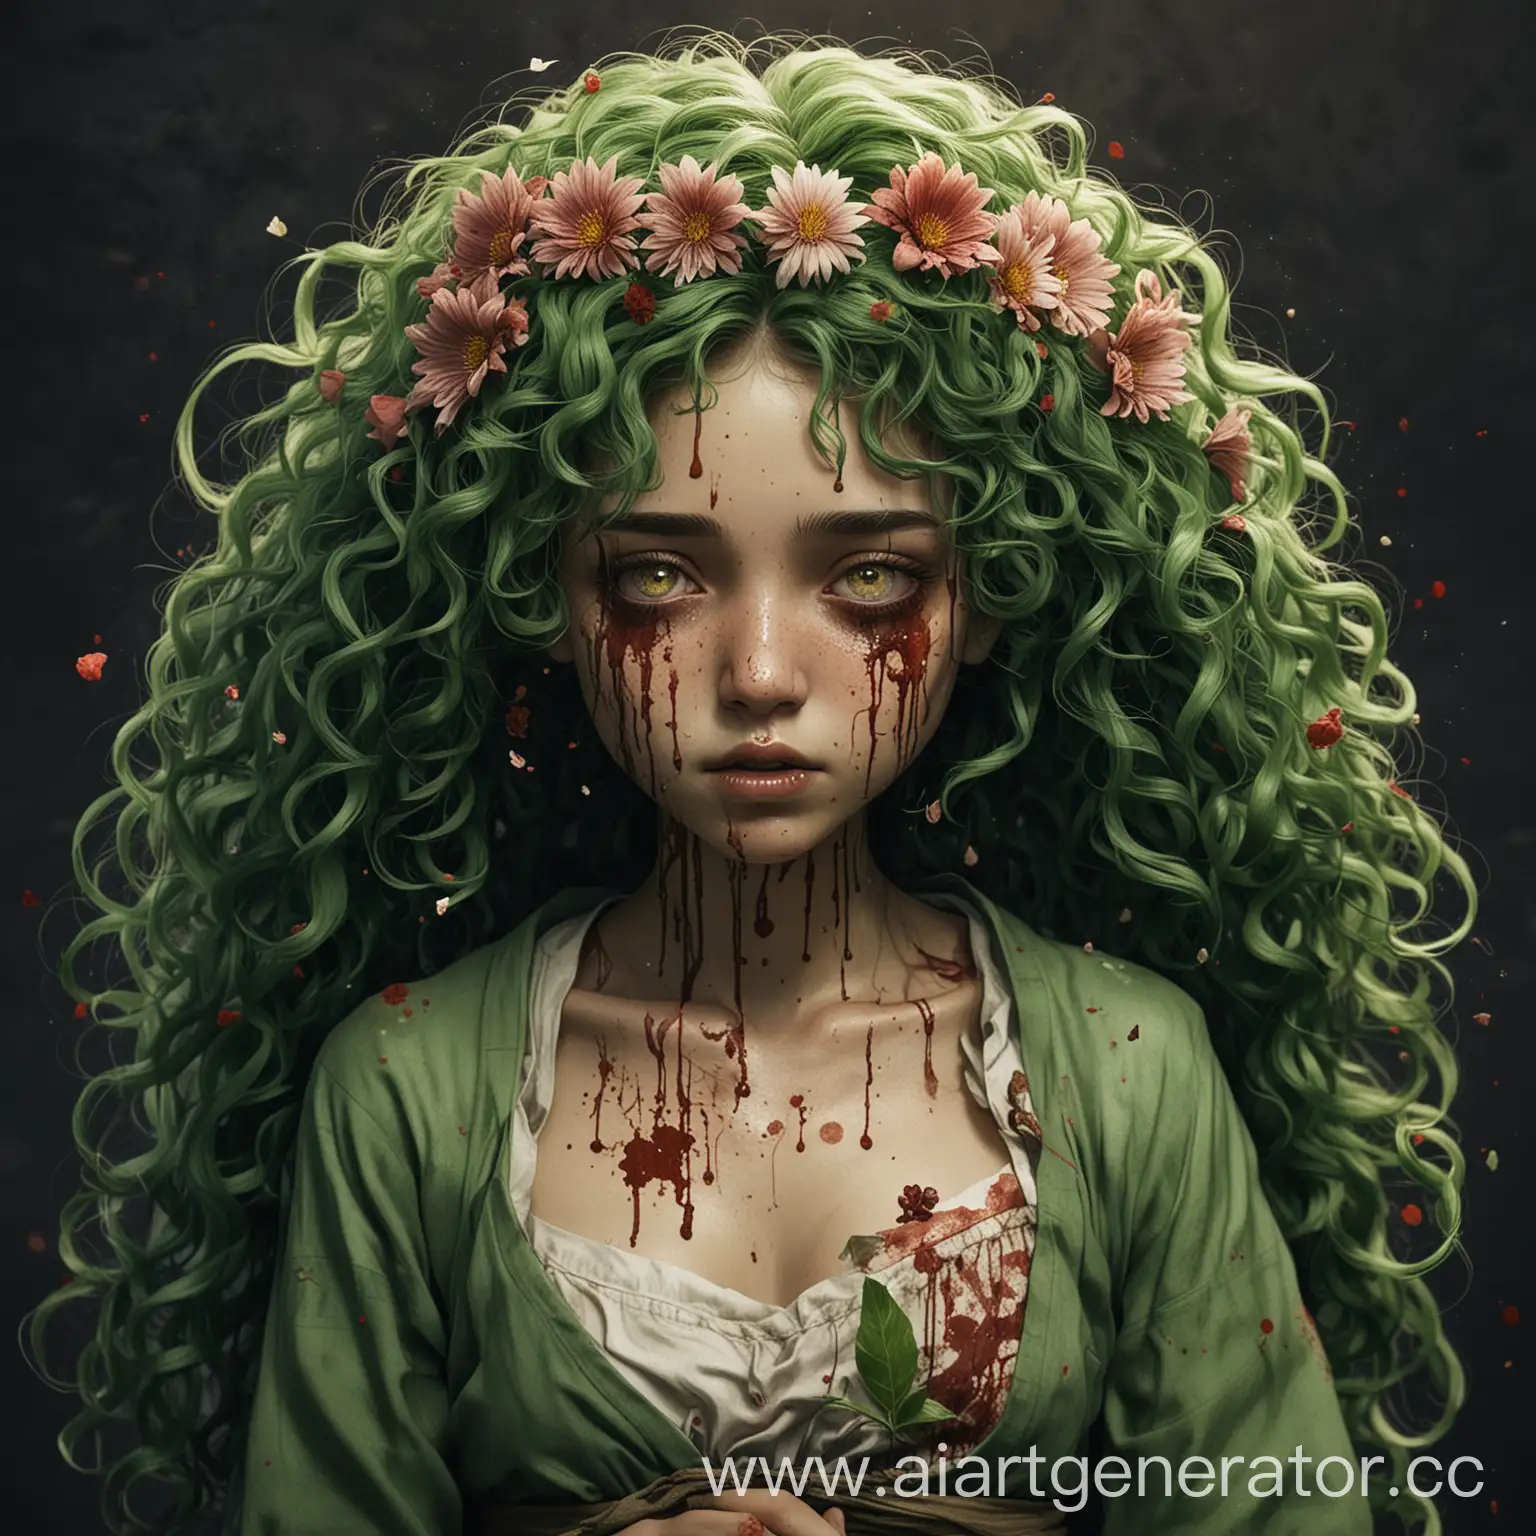 Ханахаки, девушка с зелёными кудрявыми волосами, которую тошнит кровью и цветами. Цветы прорастают через её тело, раны кровоточат. Ещё больше крови, ран и цветов